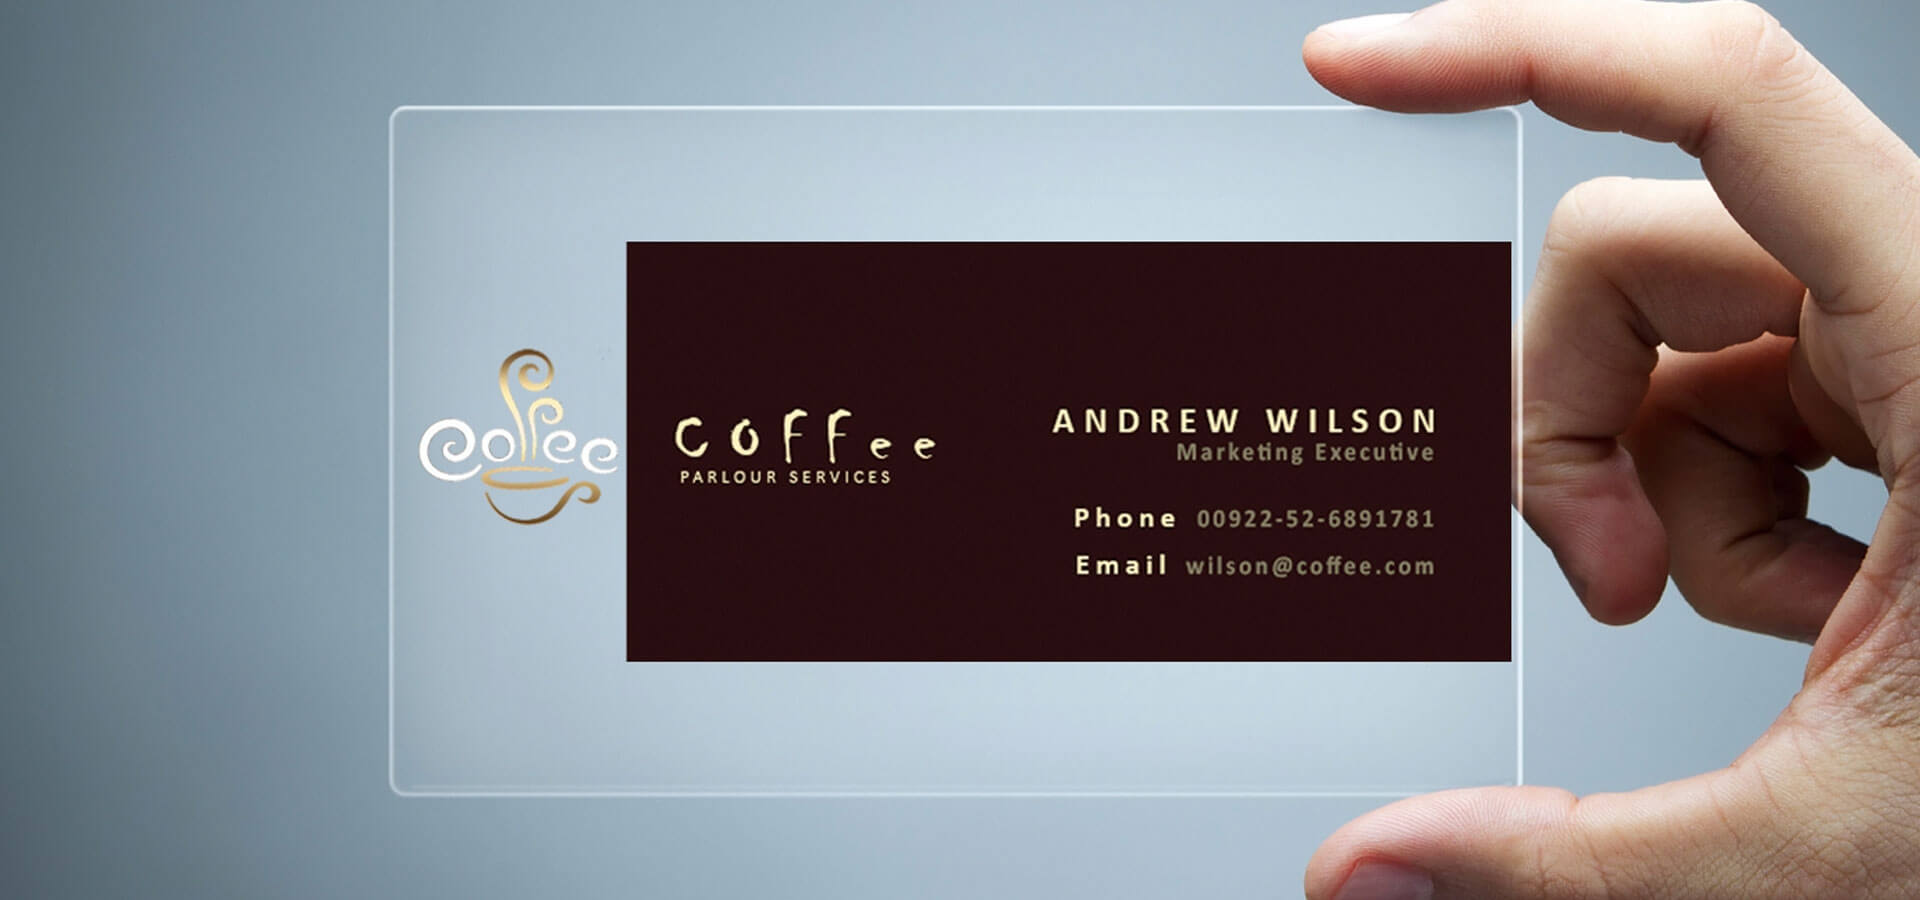 26+ Transparent Business Card Templates – Illustrator, Ms Intended For Coffee Business Card Template Free